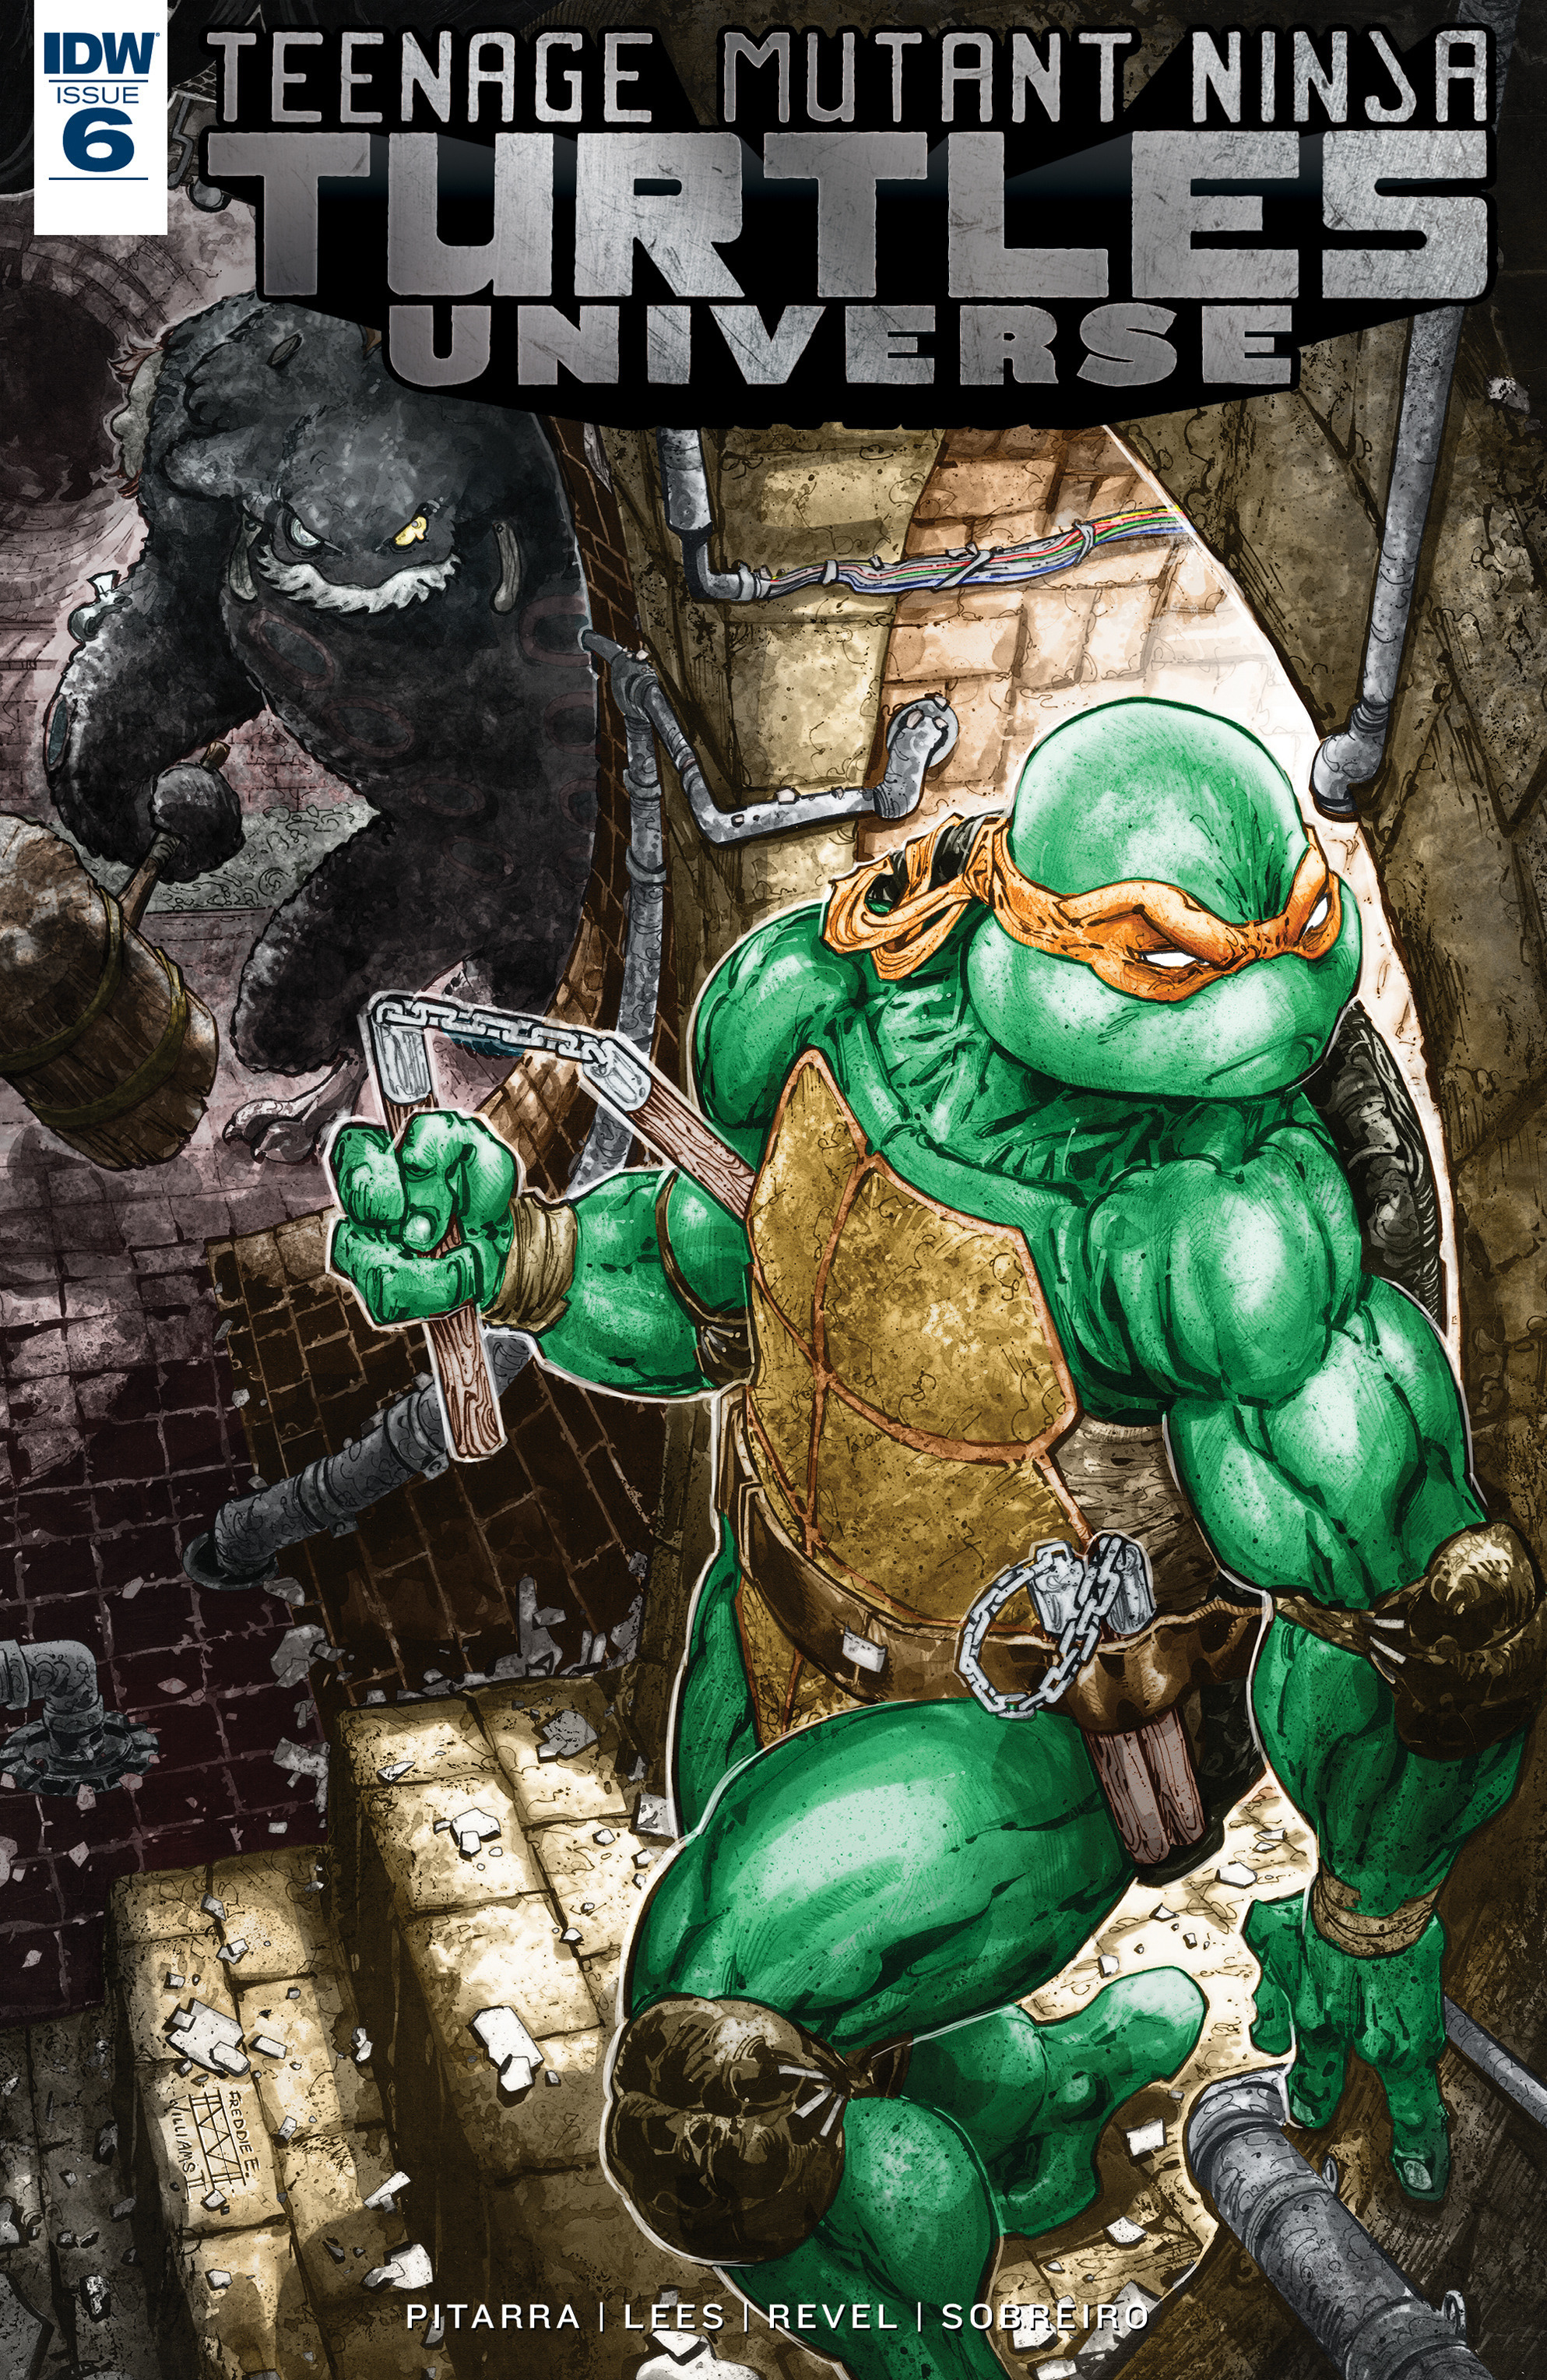 Read online Teenage Mutant Ninja Turtles Universe comic -  Issue #6 - 1